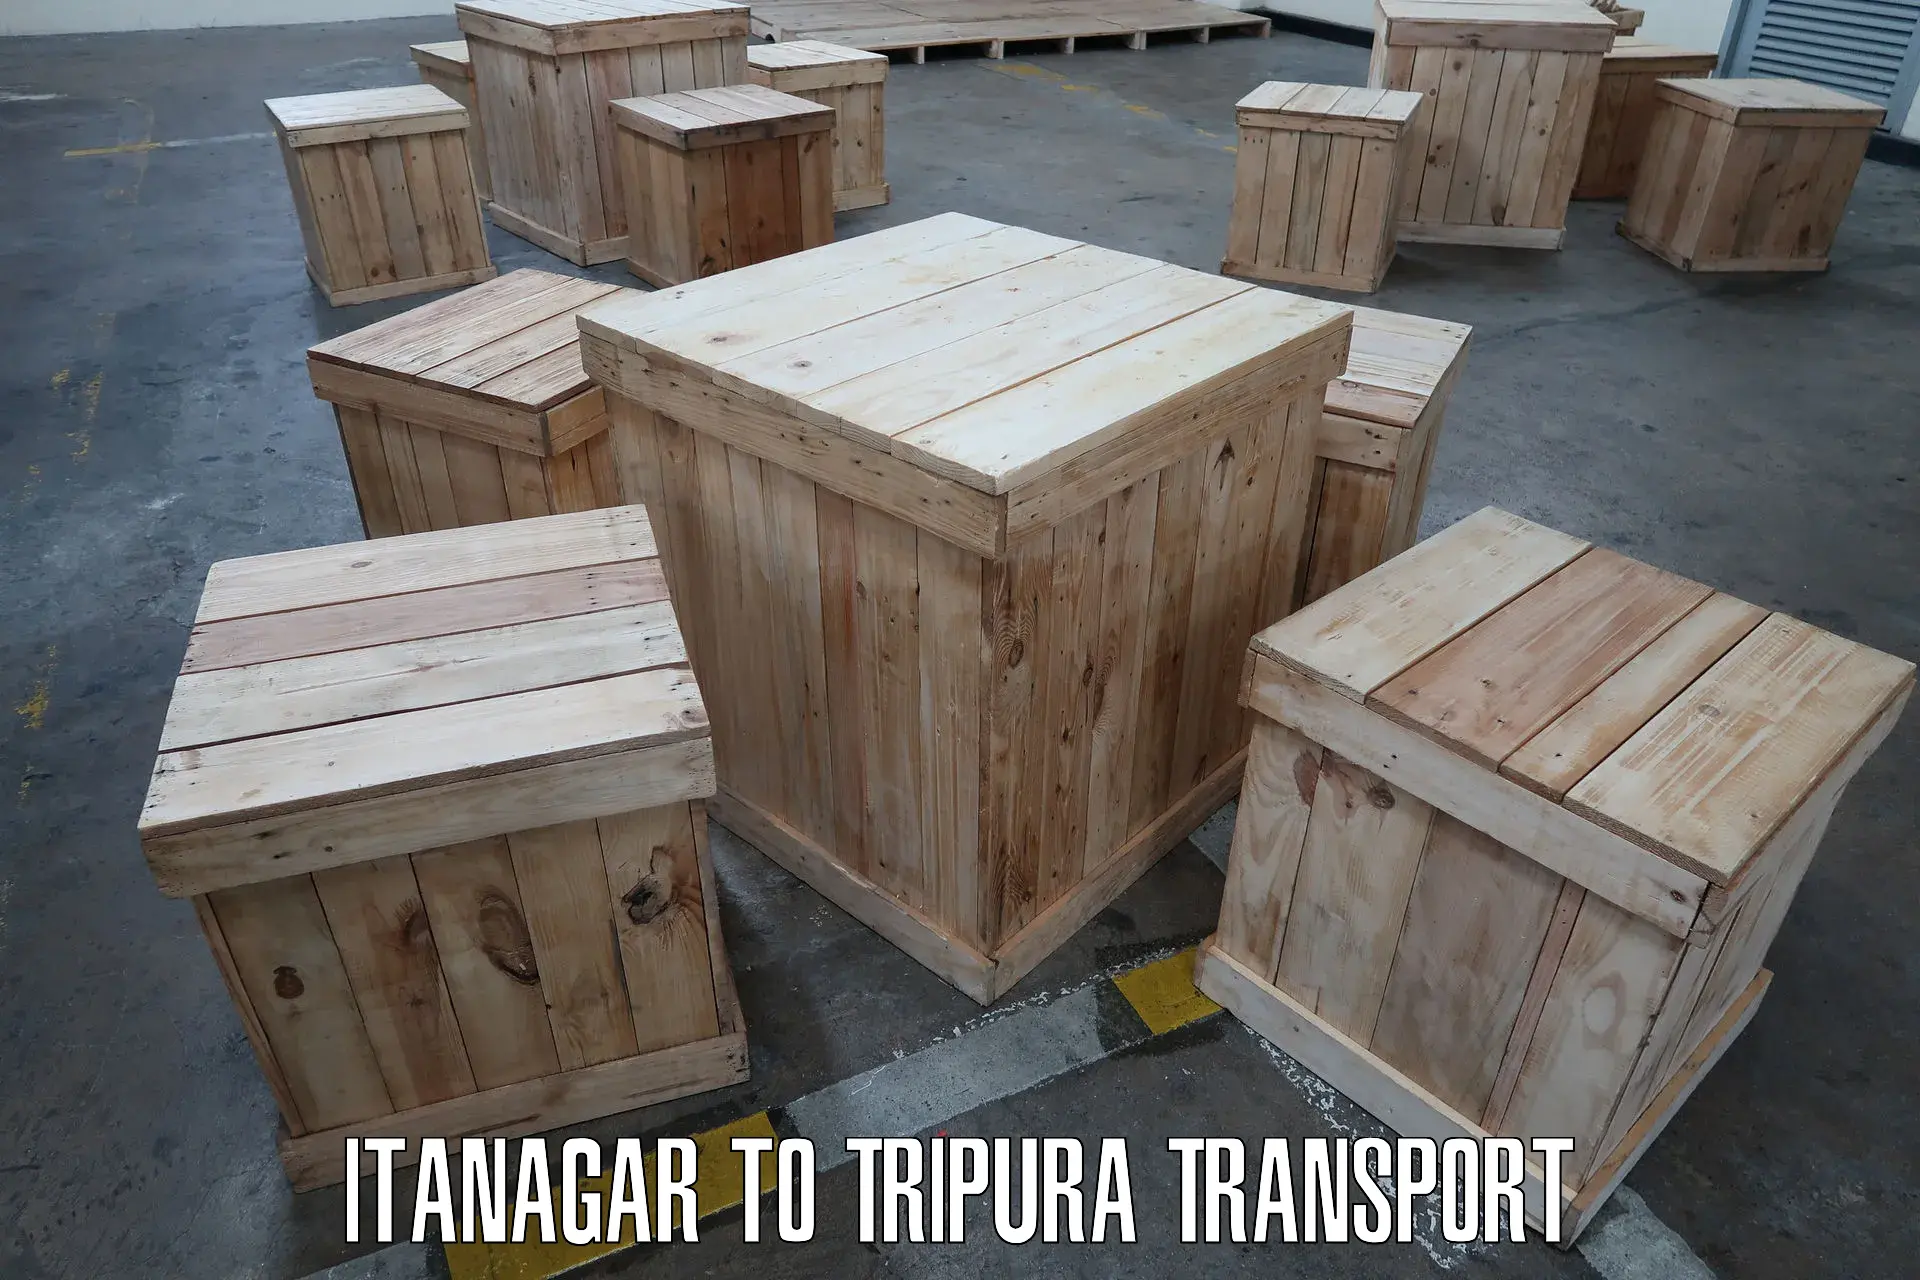 Transport in sharing Itanagar to Tripura